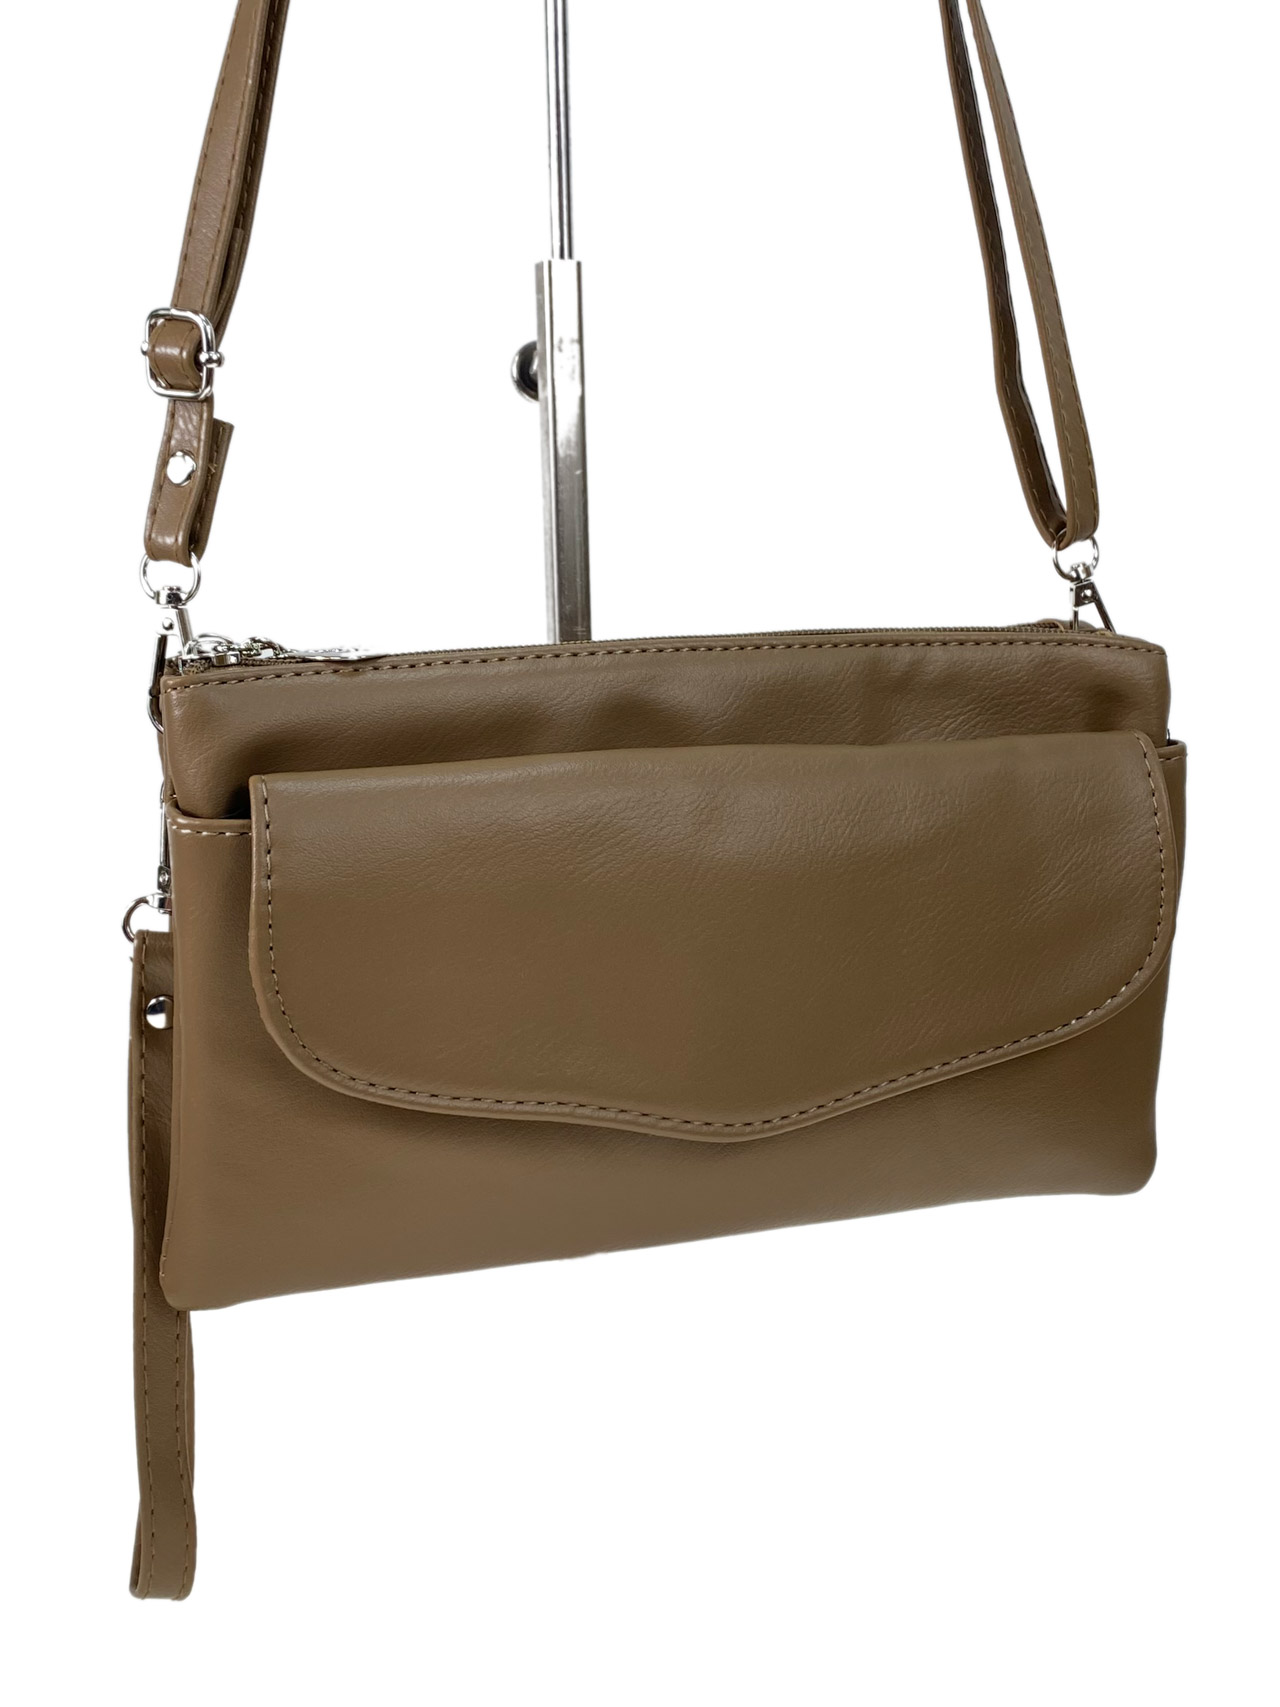 Женская сумка клатч из искусственной кожи, цвет бежево-коричневый